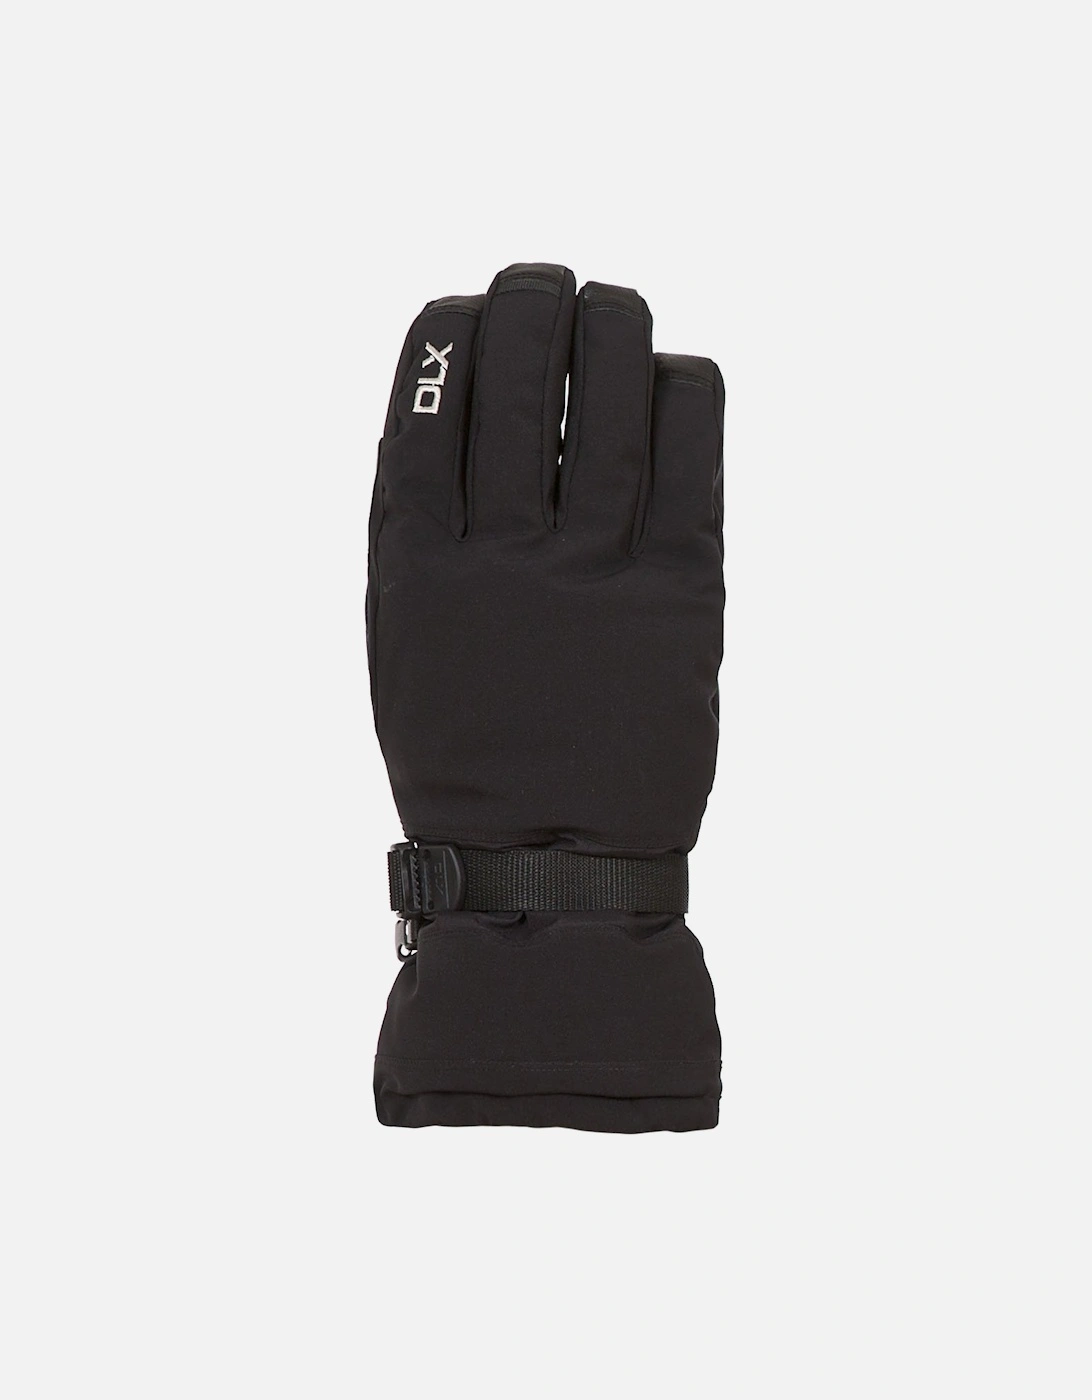 Spectre Ski Gloves, 5 of 4